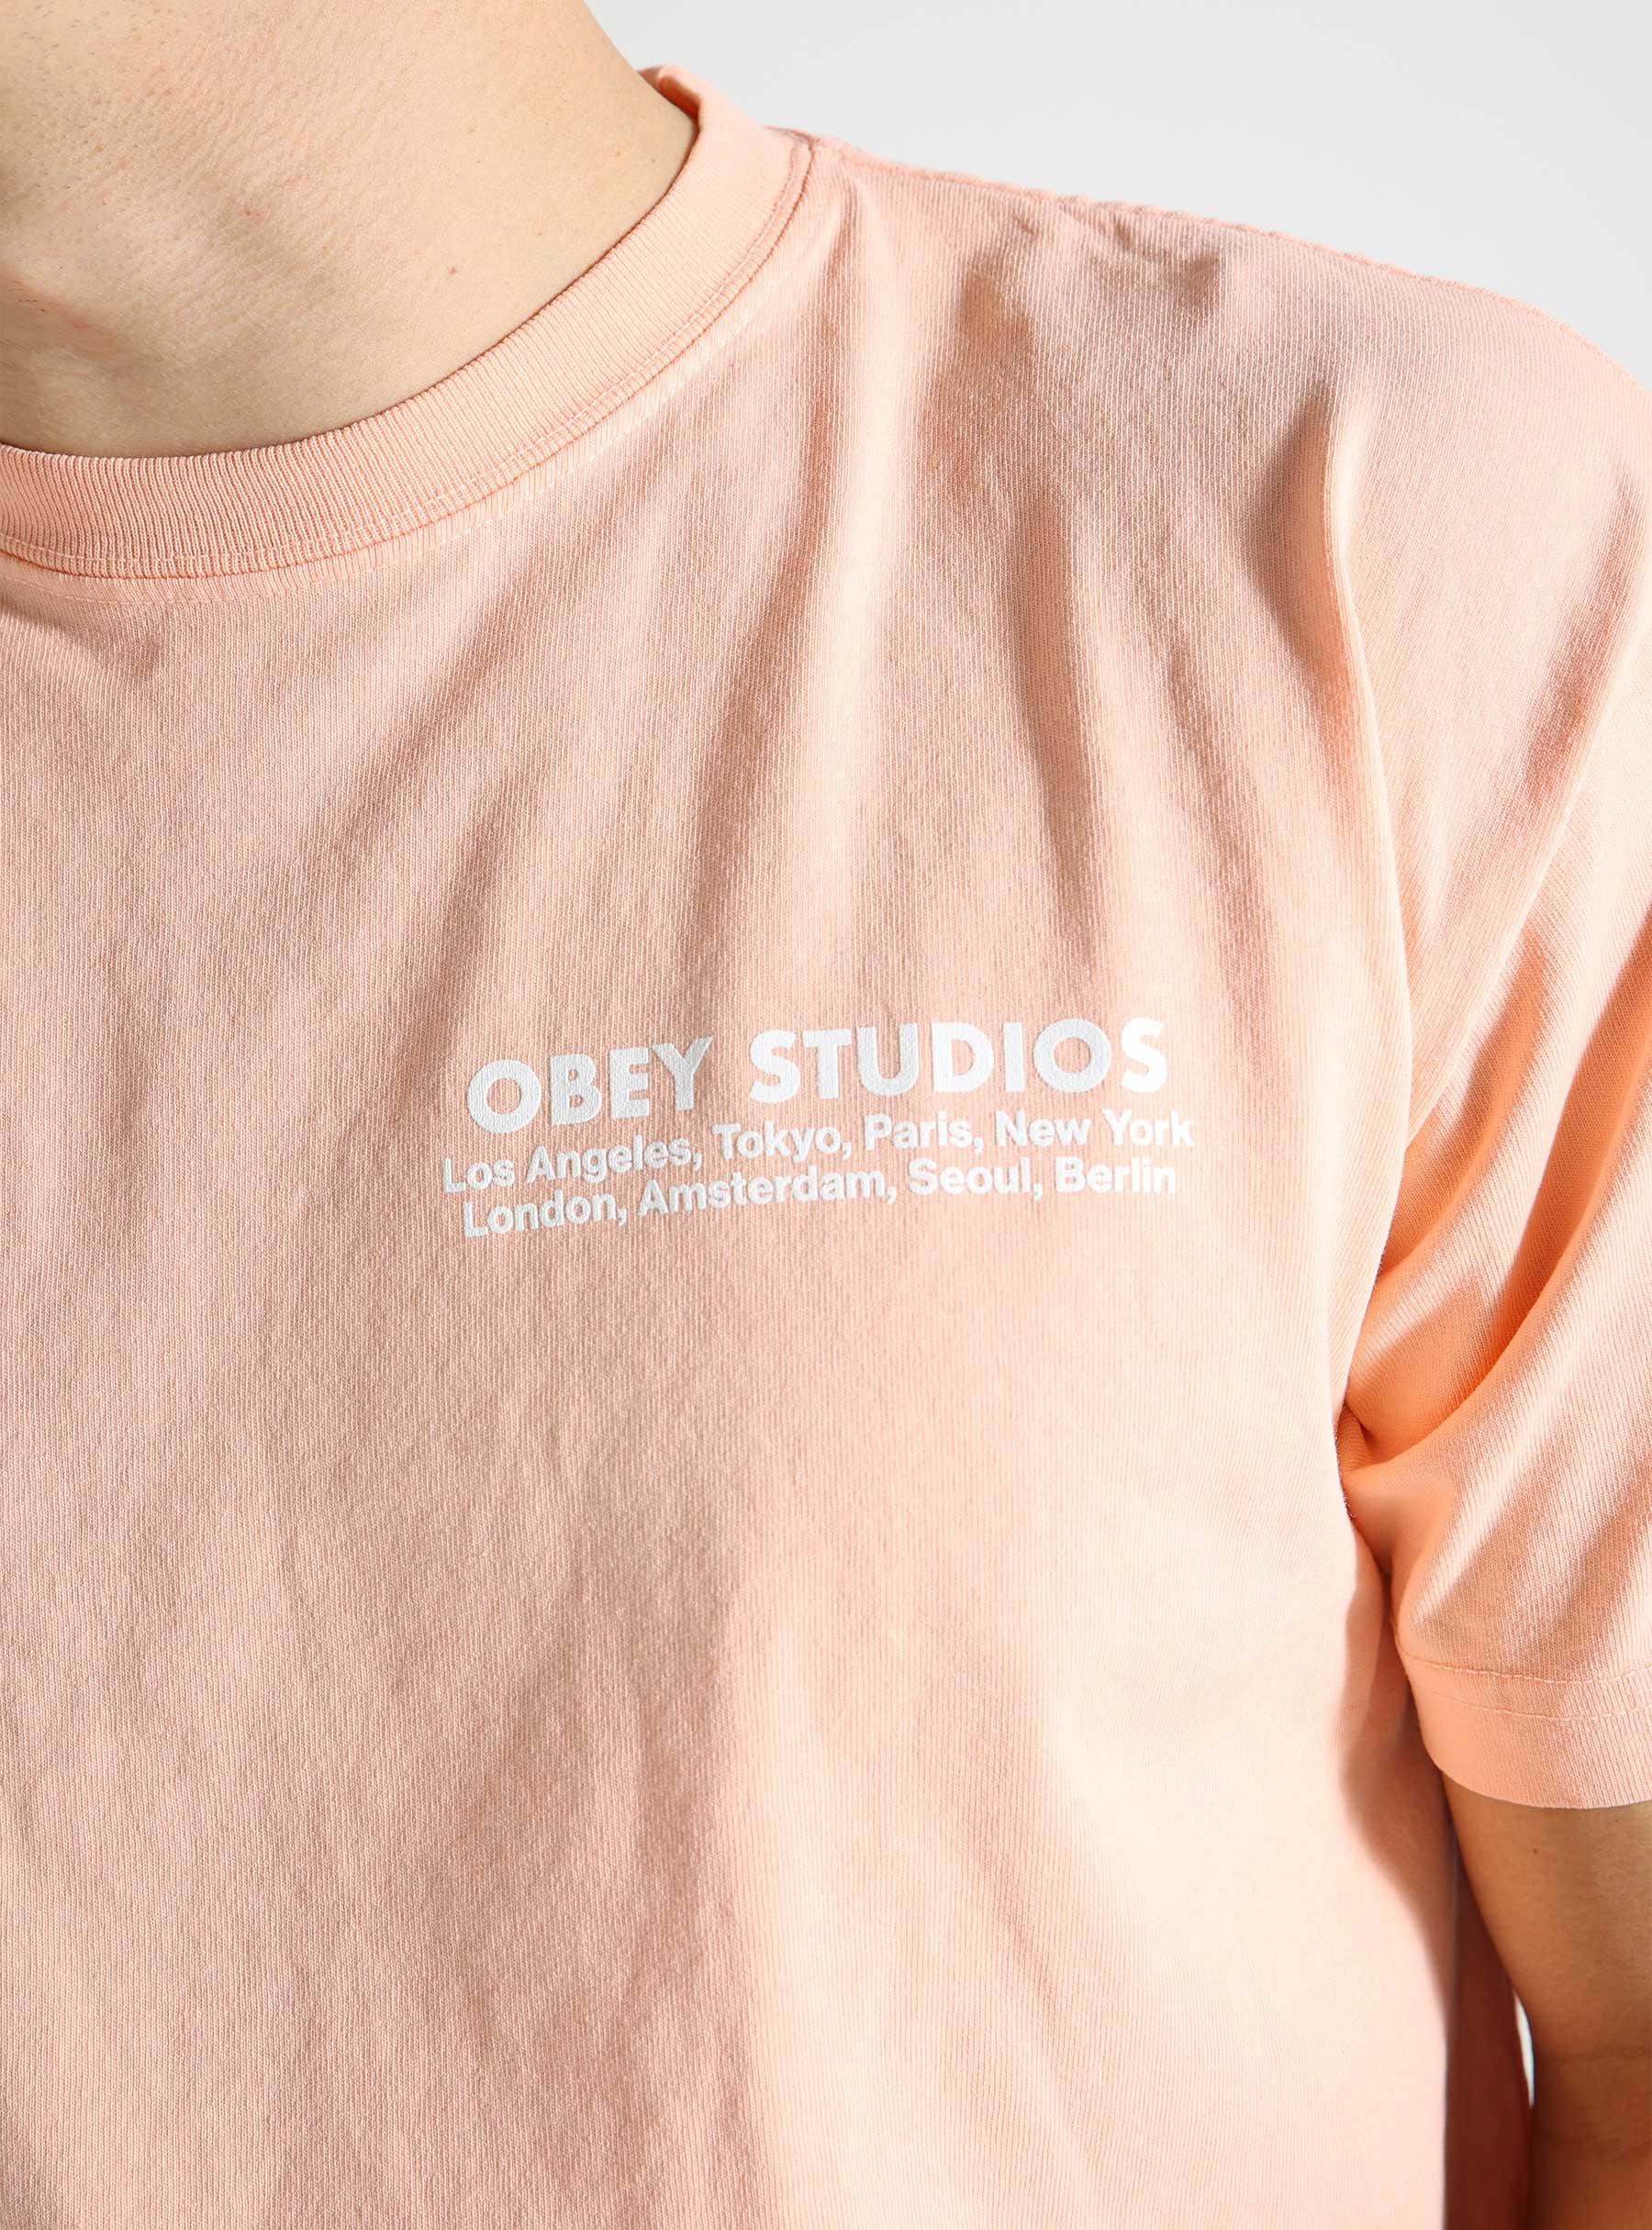 Obey Studios Eye T-shirt Peach Parfait 166913717-PHP